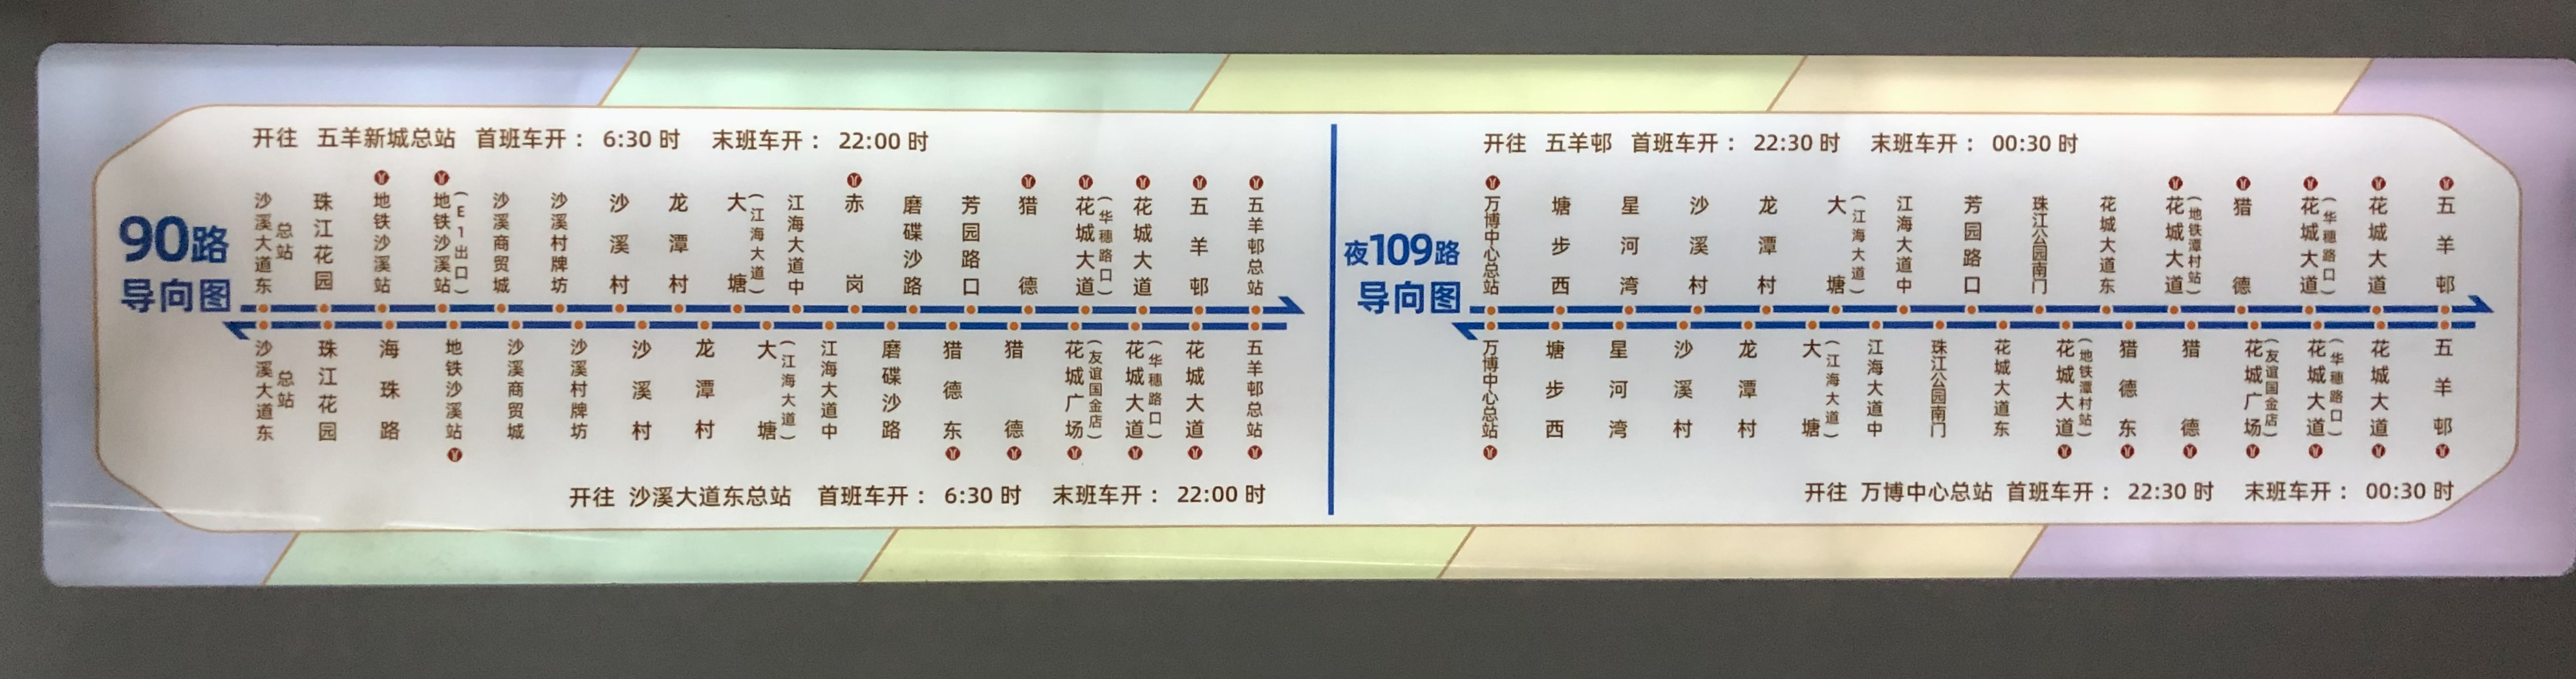 广州夜109路公交车路线